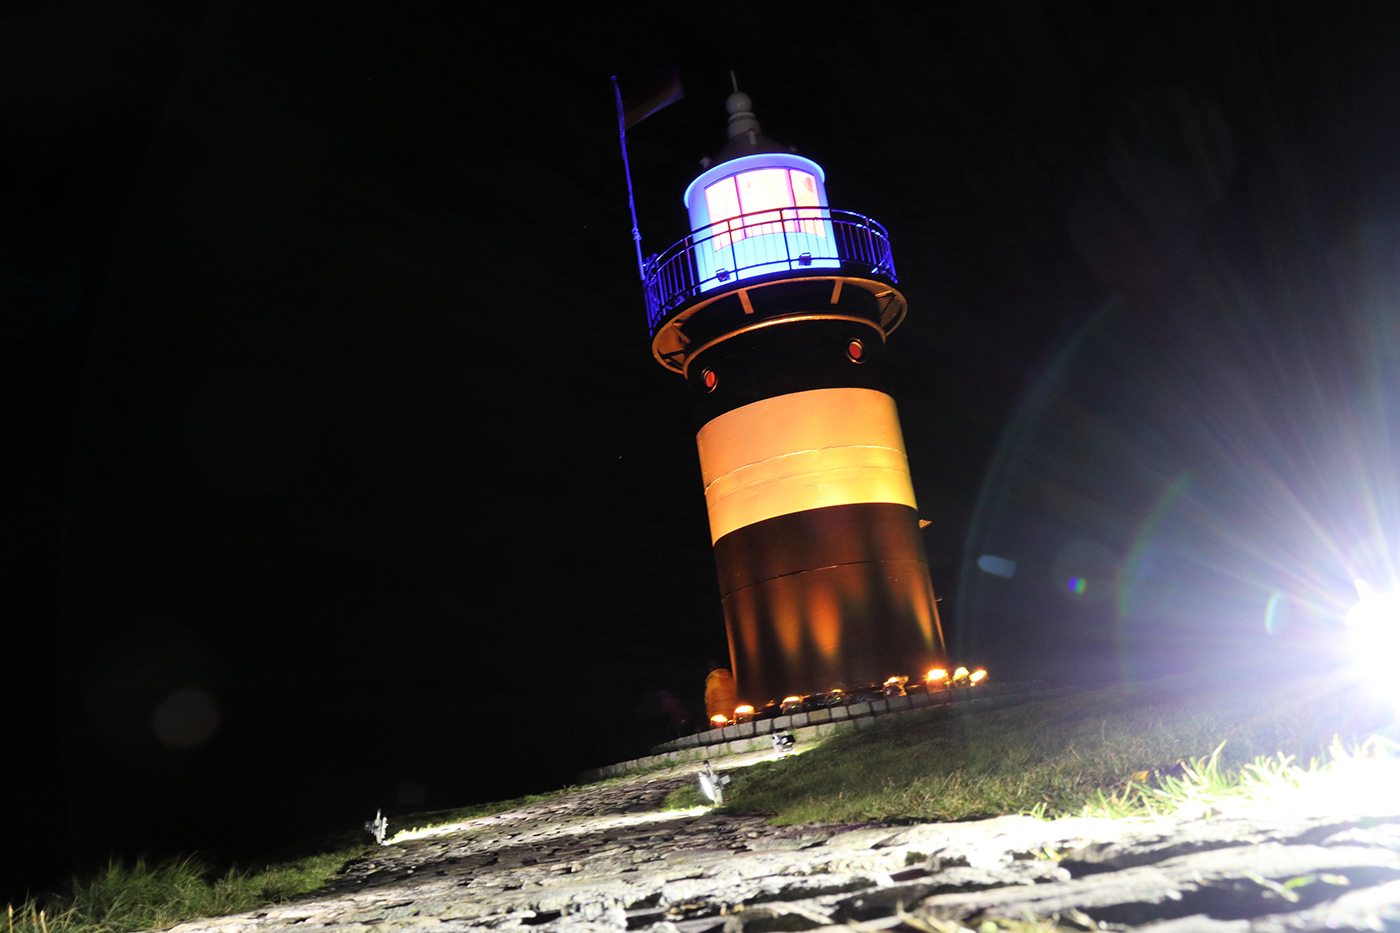 Fotowettbewerb Lichtkunst Nachtfotografie Nordseeküste nacht licht